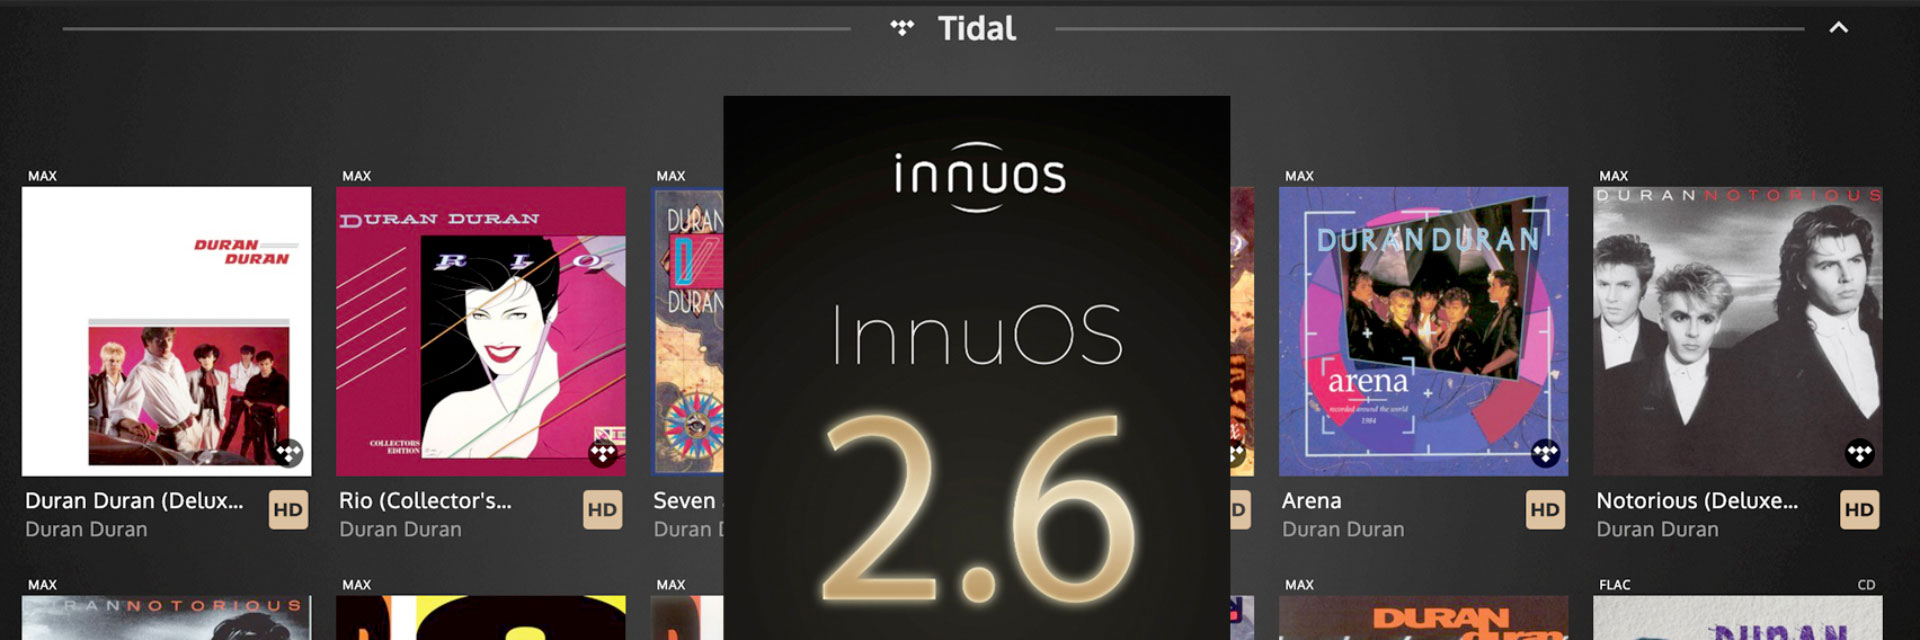 InnuOS 2.6